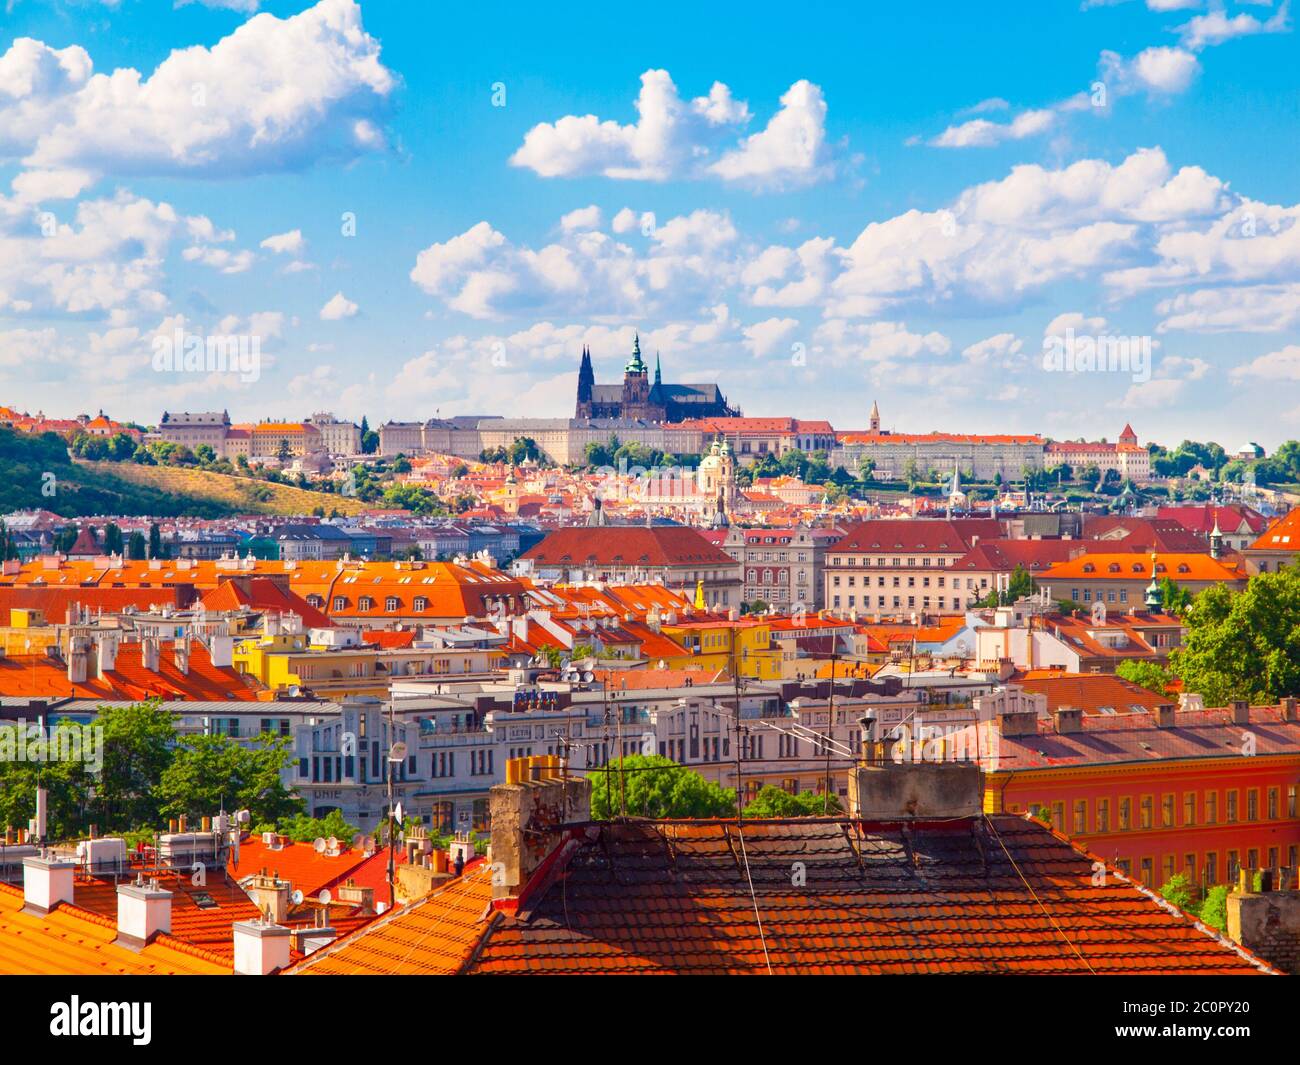 Prag Panorama mit Prager Burg - Hradcany und roten Dächern. Sonniger Sommertag mit blauem Himmel und weißen Wolken, Tschechische Republik. Stockfoto